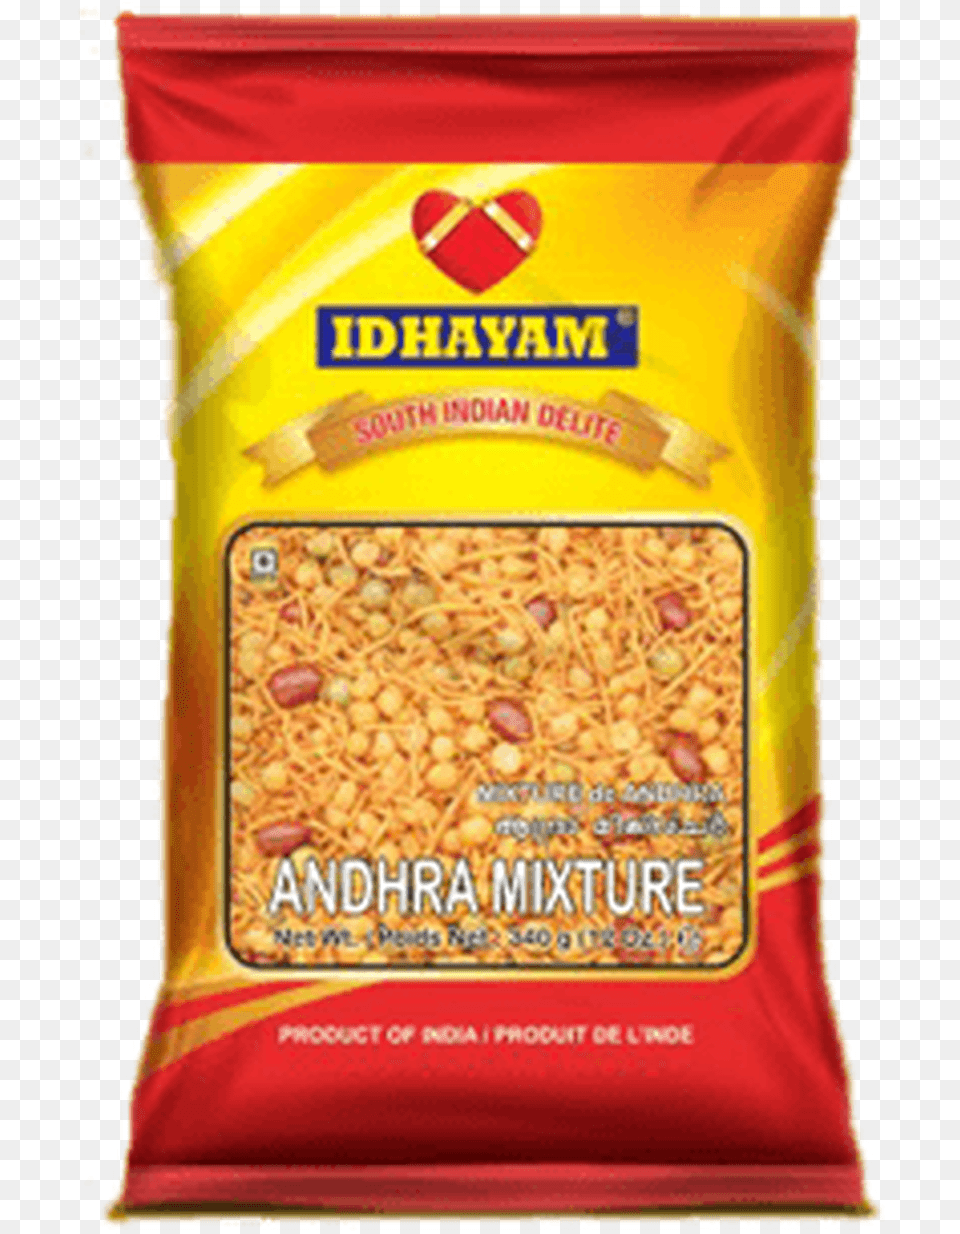 Idhayam Andhra Mixture, Mailbox, Food Free Png